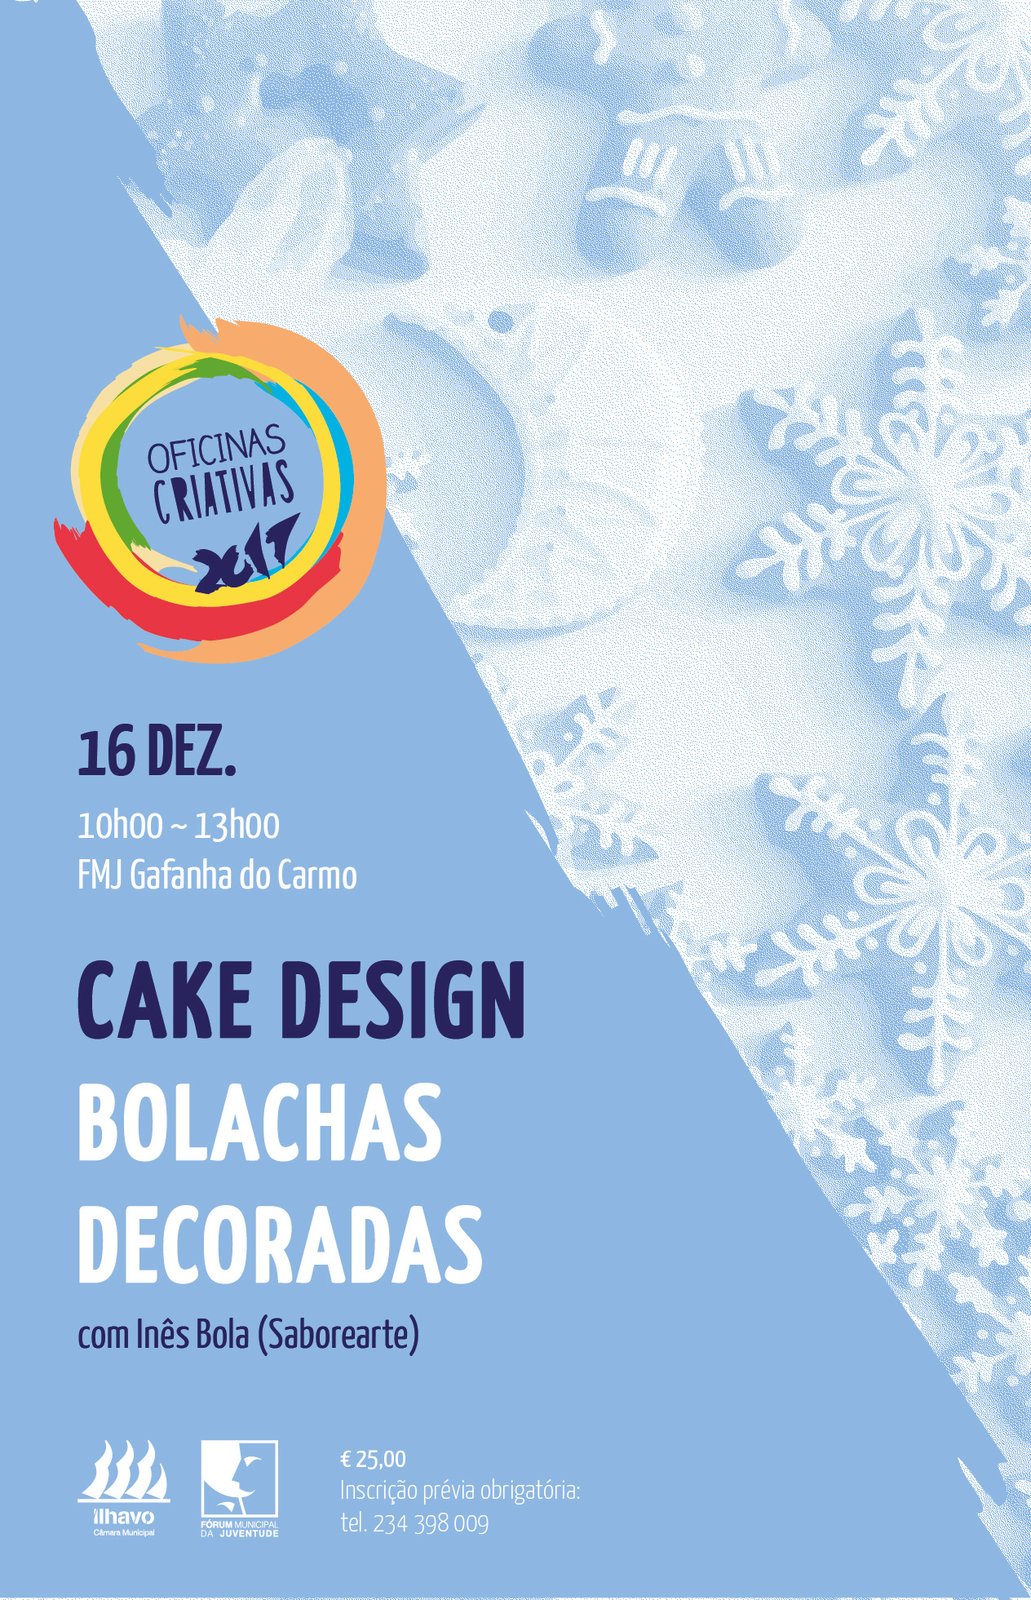 Oficinas Criativas Cake Desing "Bolachas decoradas"